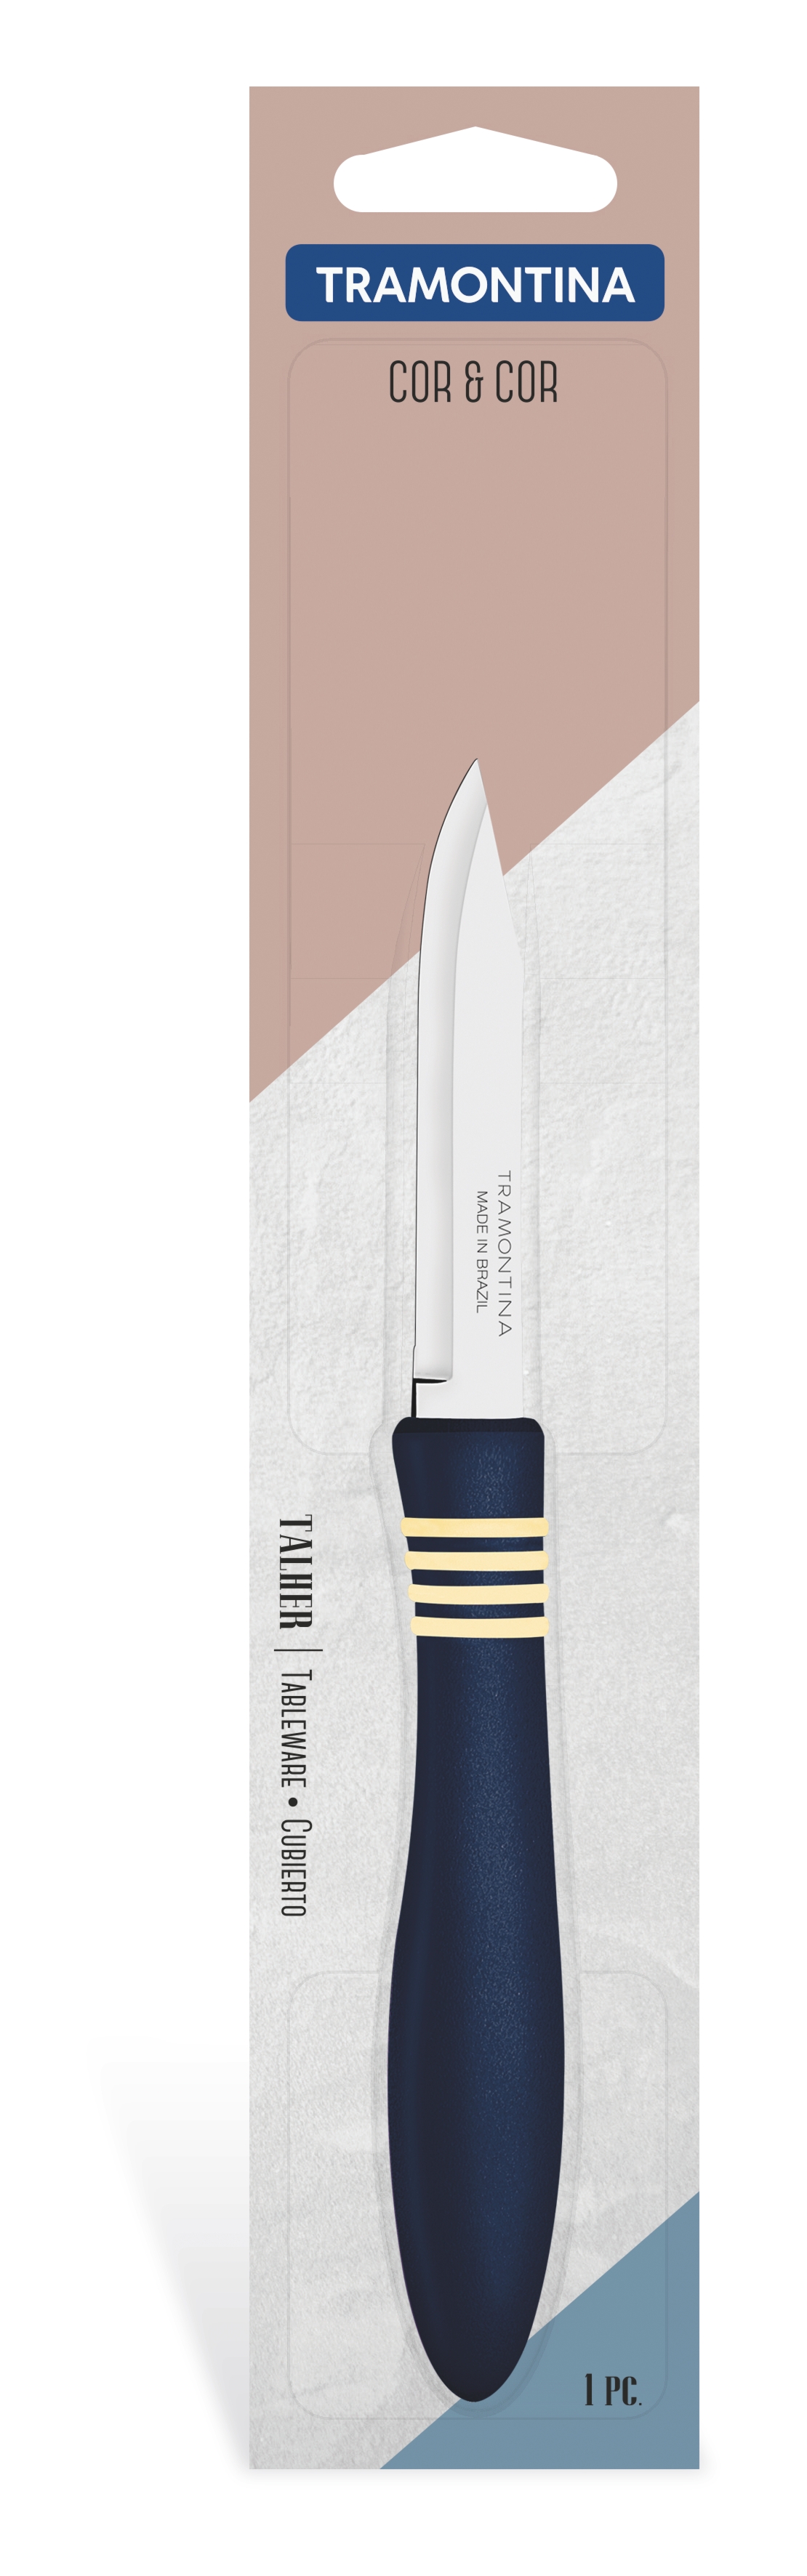 Нож для овощей TRAMONTINA COR & COR, 76 мм (6410501)